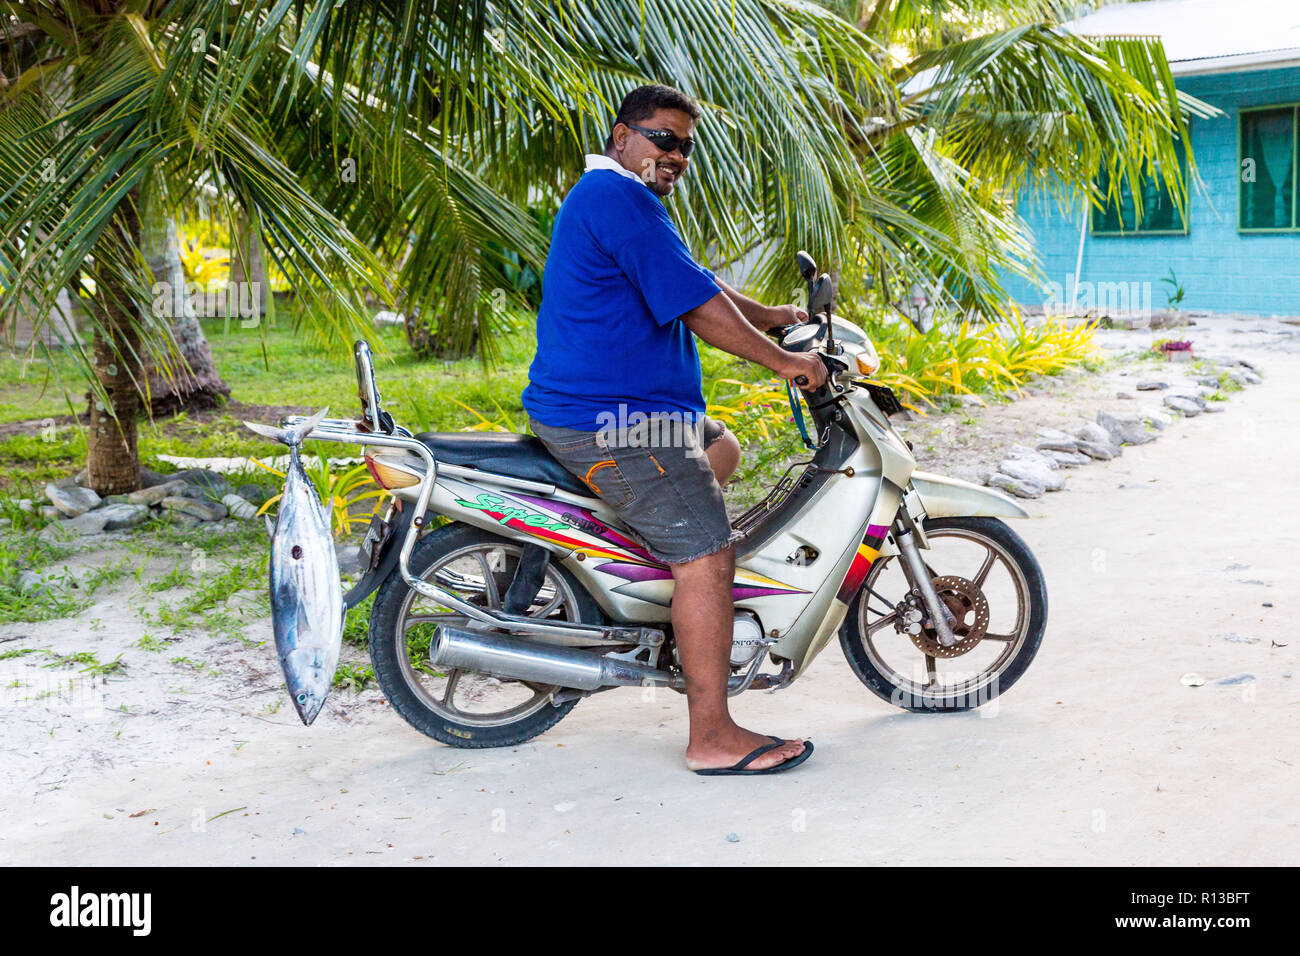 Vaiaku, Tuvalu : Un homme polynésien indigènes locaux sur une moto/moto avec une pêche au thon. L'atoll de Funafuti Fongafale, motu, Polynésie, Océanie. Banque D'Images